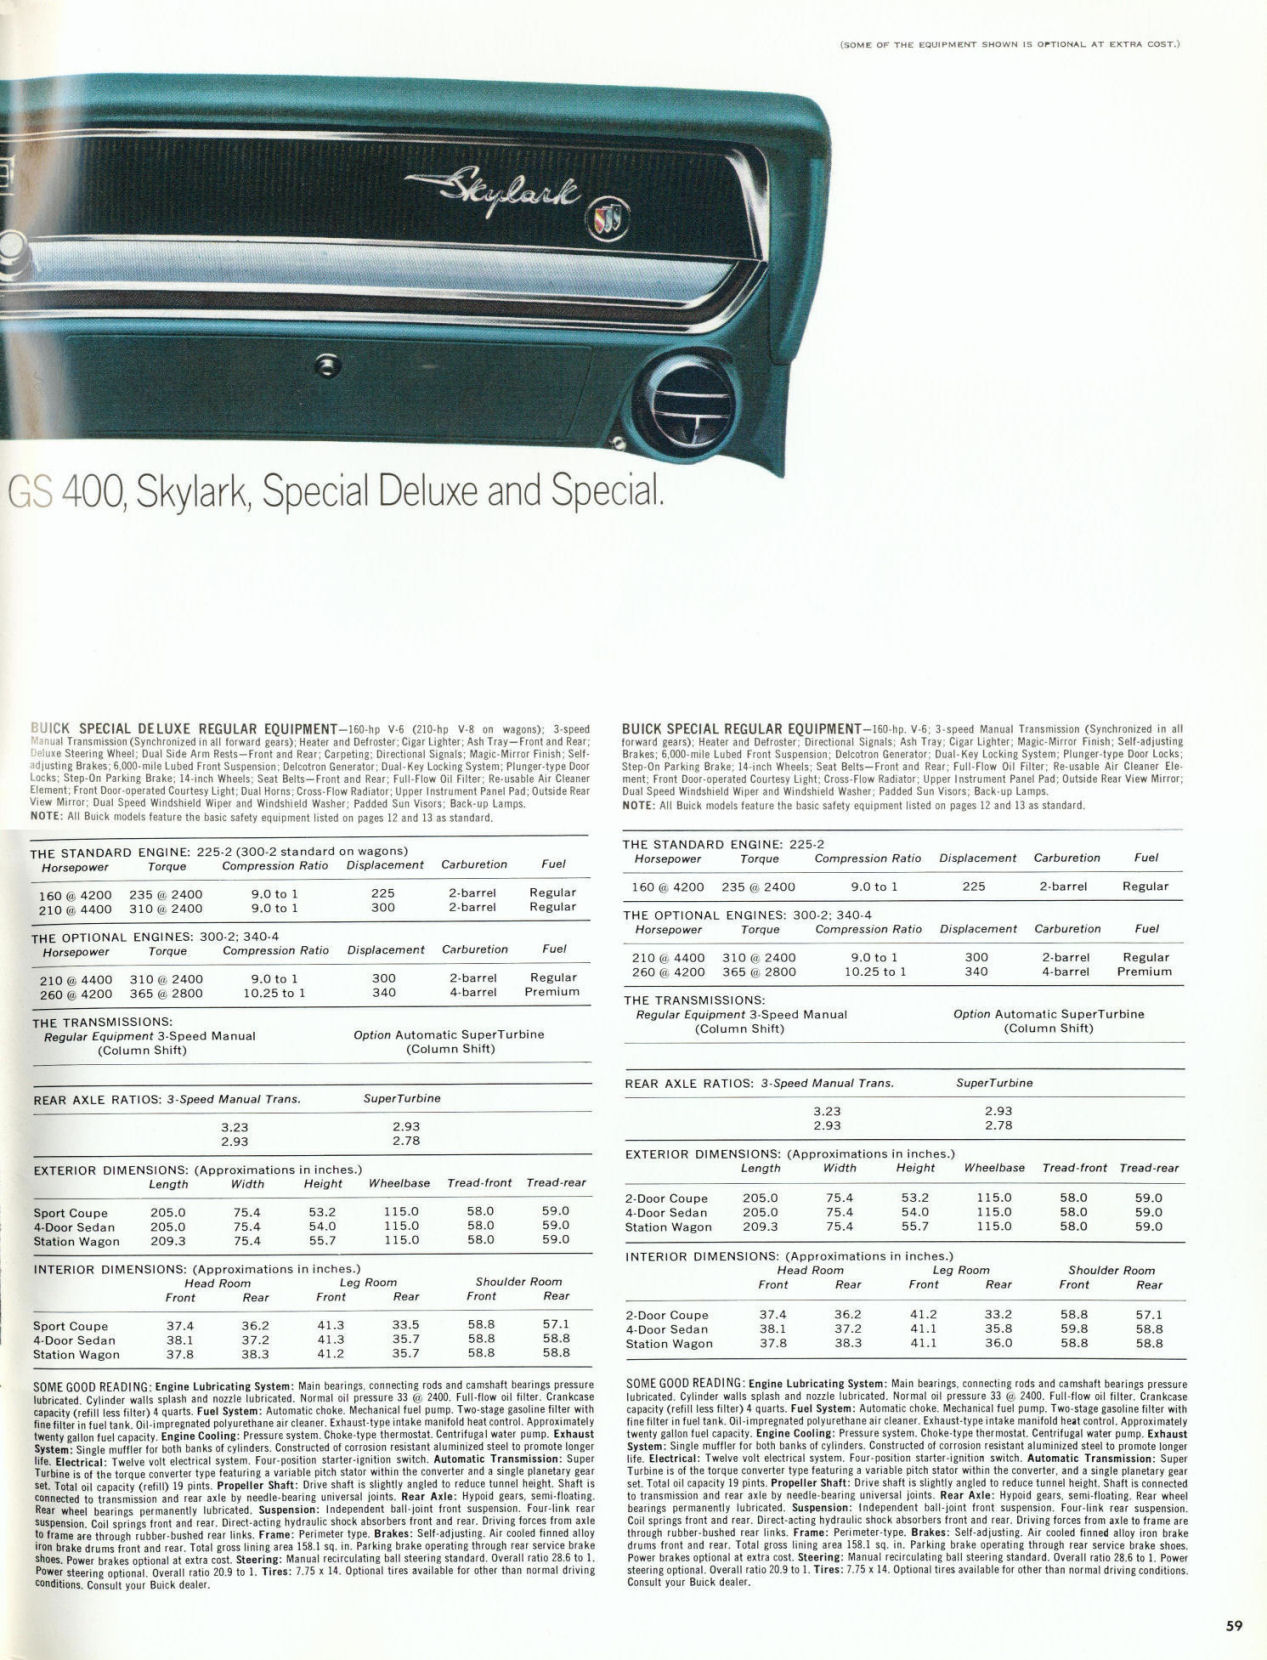 1967 Buick-59